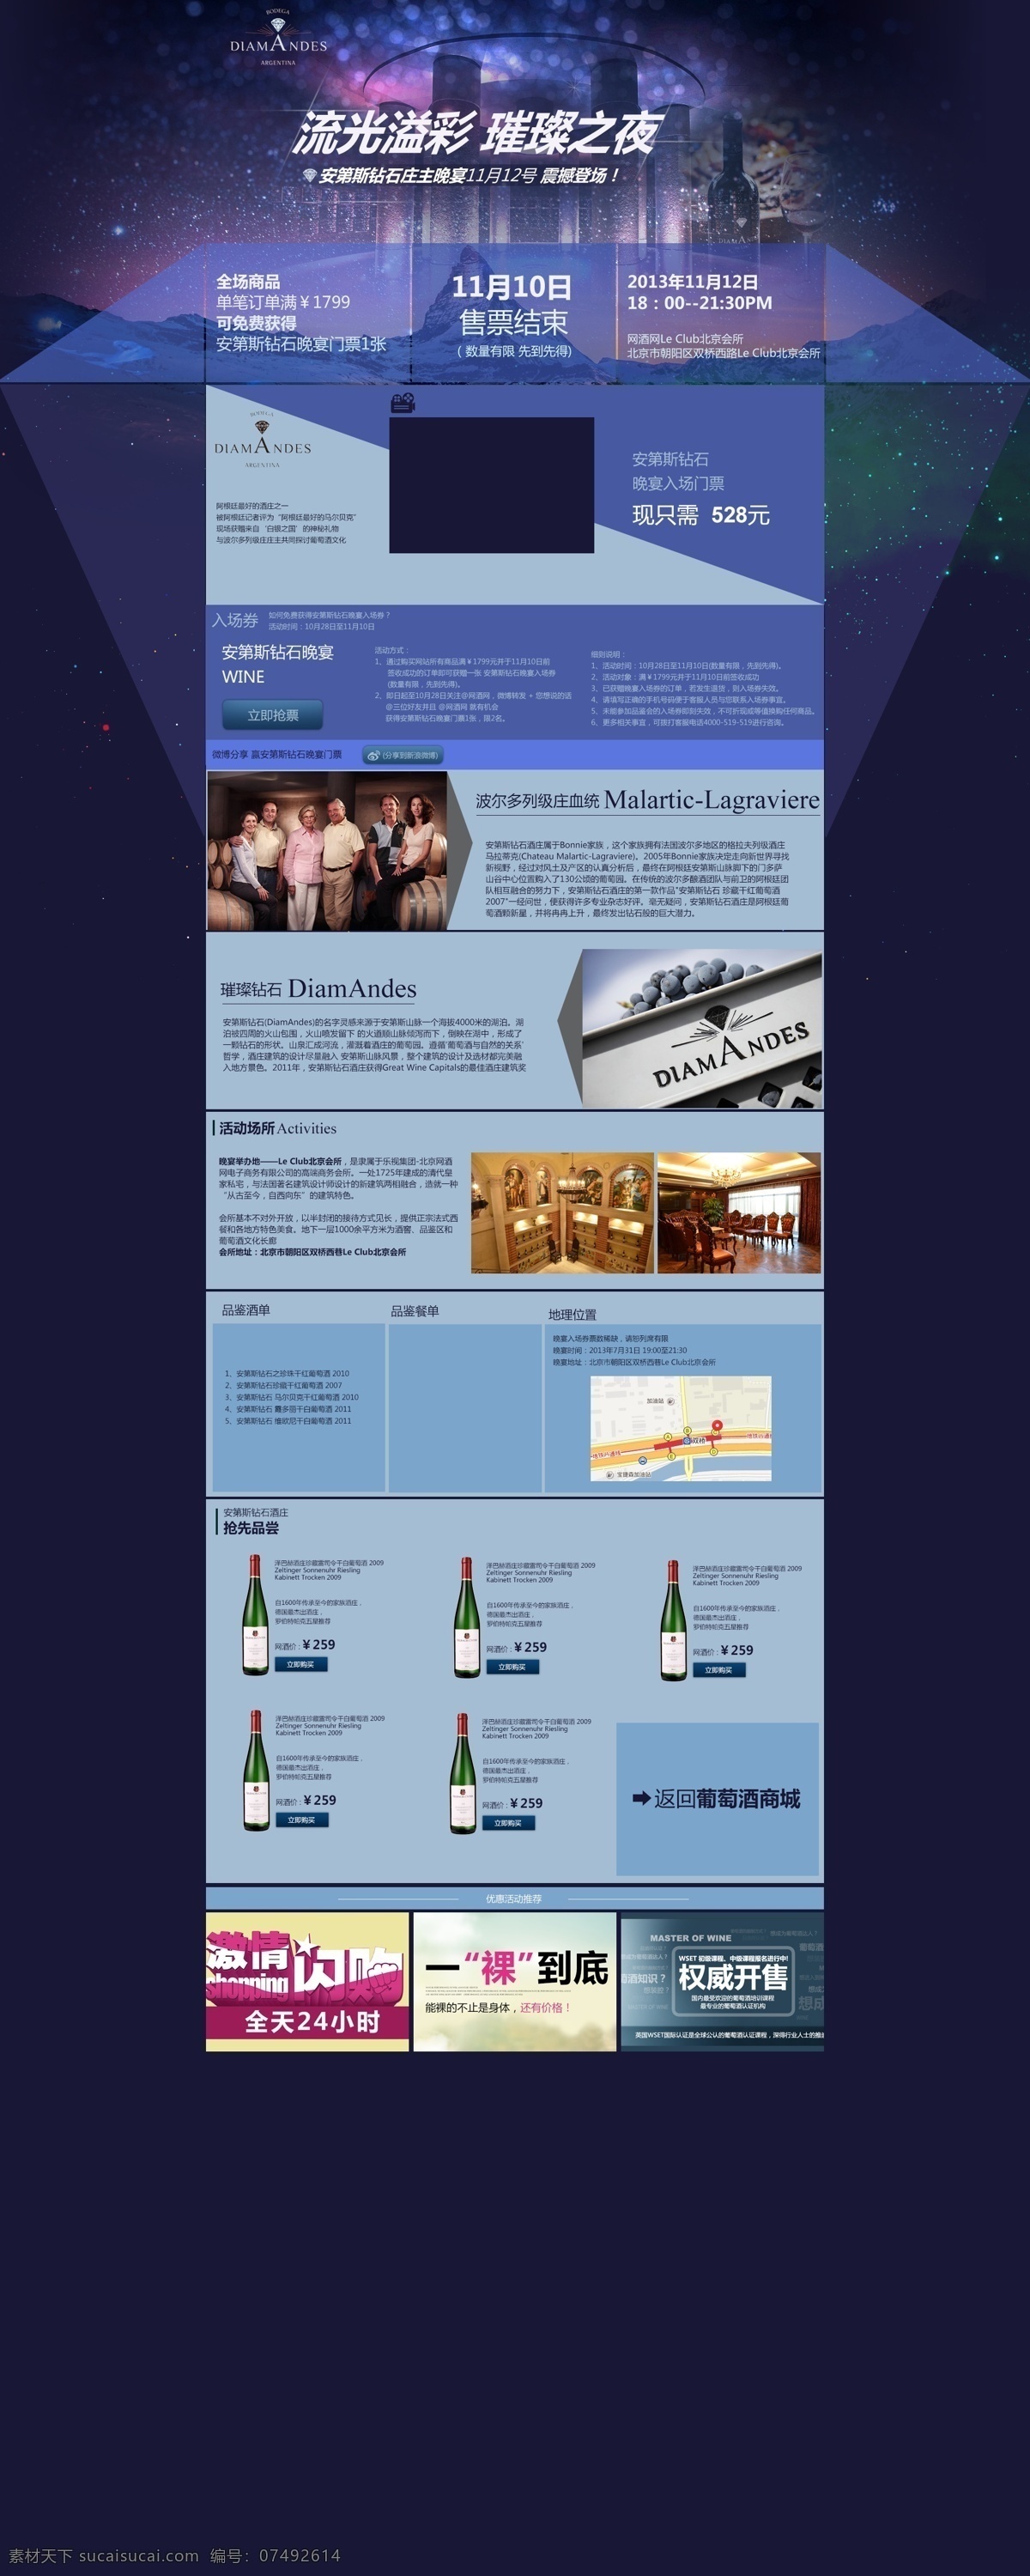 电商 红酒 活动 酒庄 葡萄酒 网页模板 网站设计 源文件 安第斯 专题 模板下载 中文模板 psd源文件